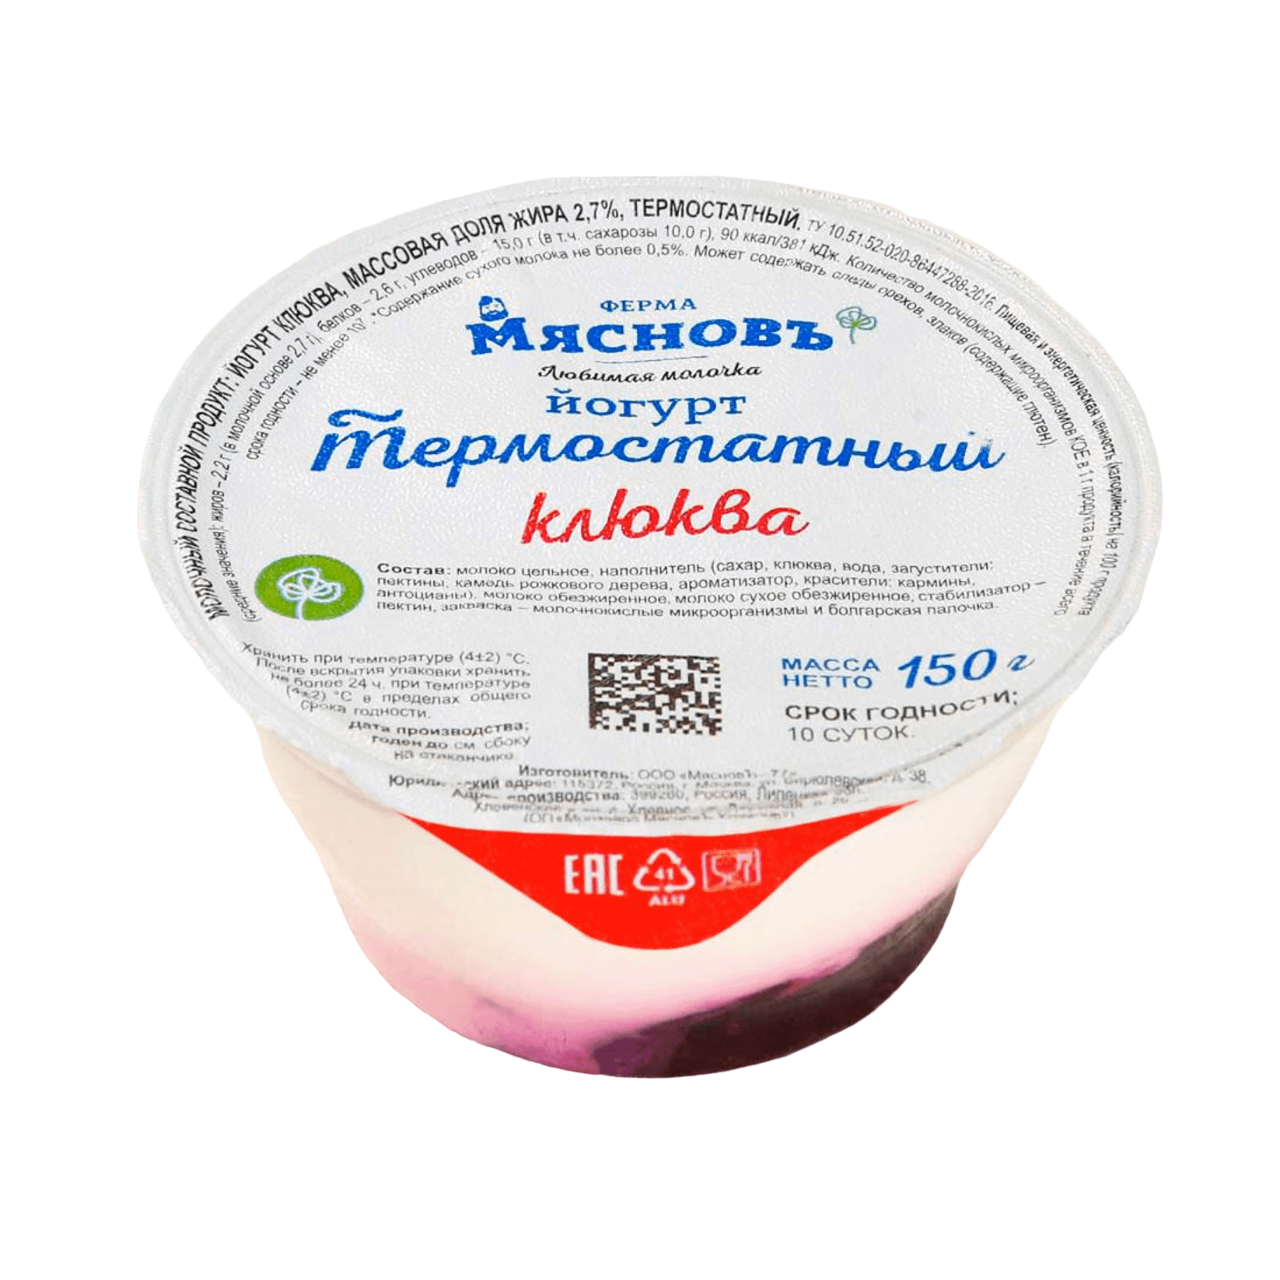 Йогурт МясновЪ ФЕРМА термостатный клюква 2,7% 150 г